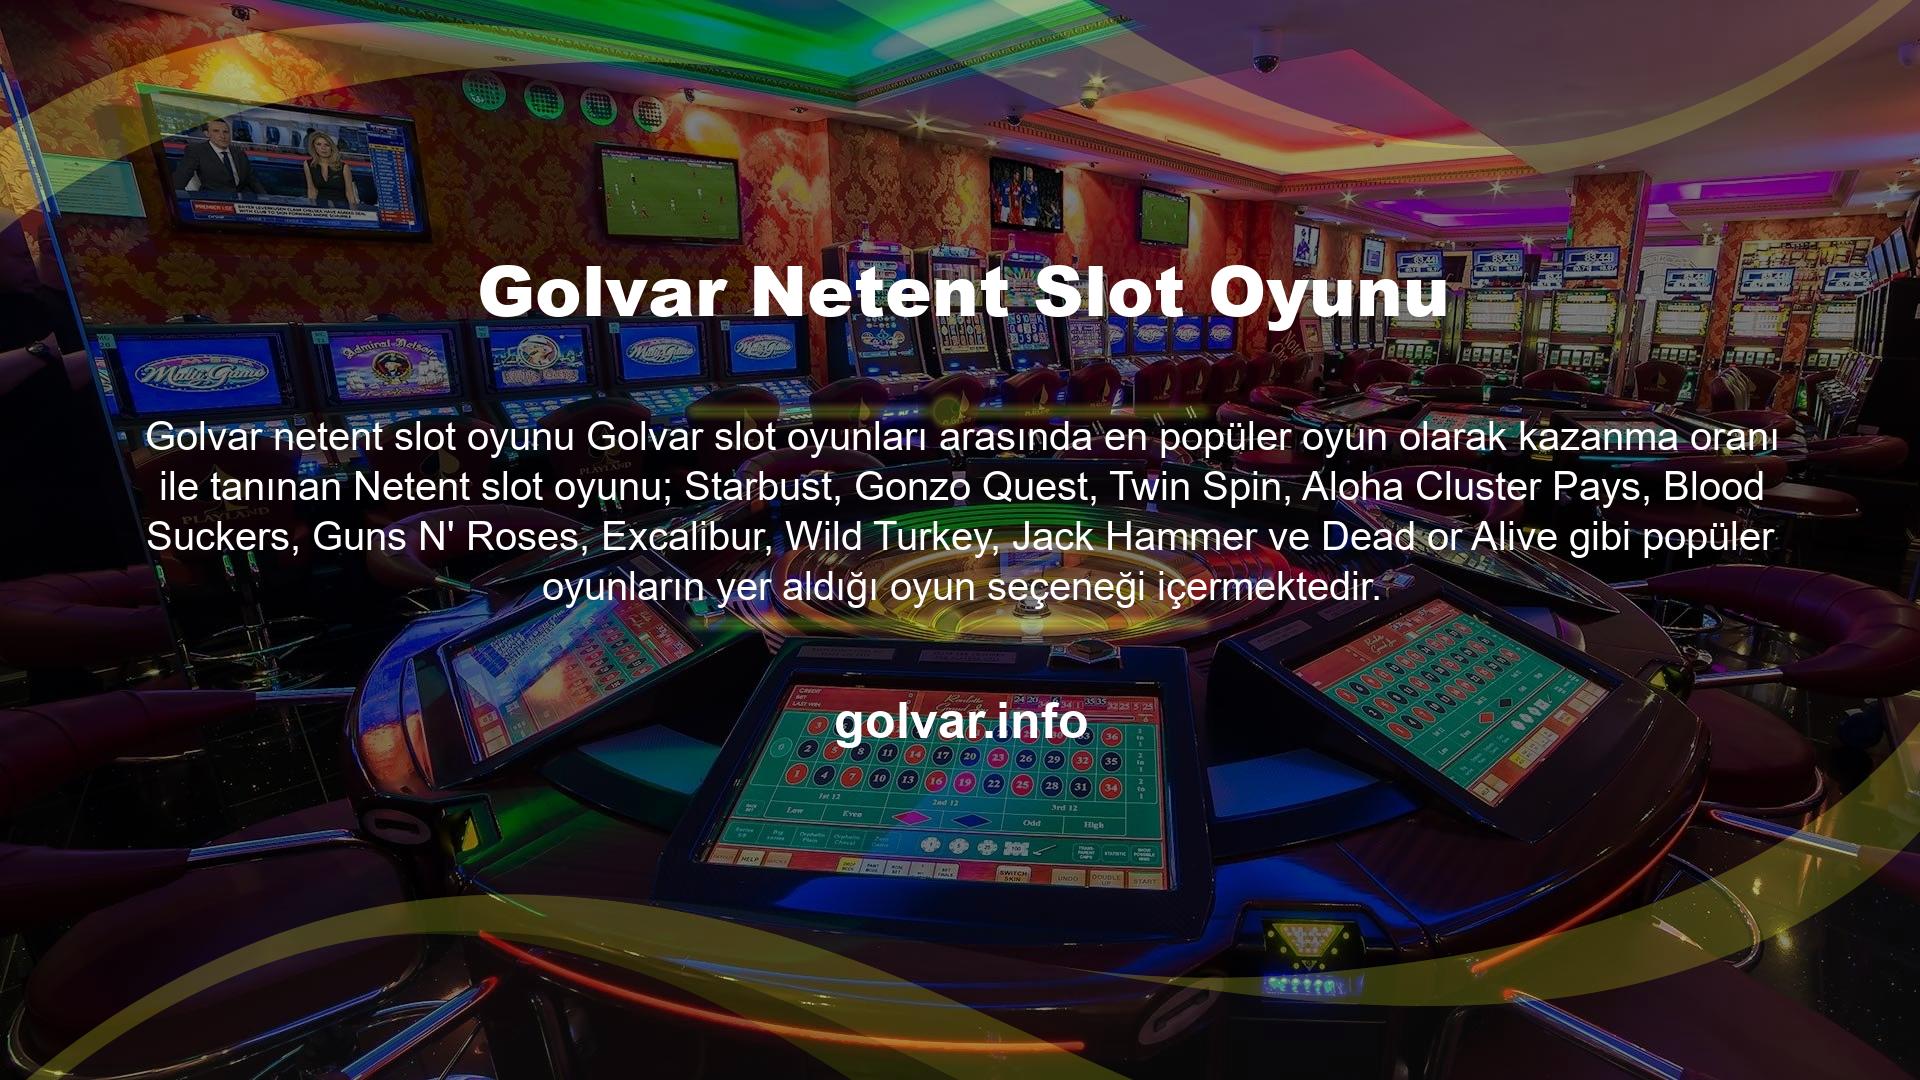 Golvar üyeleri, ödeme hatları ve ücretsiz döndürme özelliği olan Netent slot oyunlarını sever; Üyelerin düşük yatırımla yüksek kazançlar elde edebilmesi Netent slot oyunlarını hit oyunlar unvanına iten en önemli etkendir